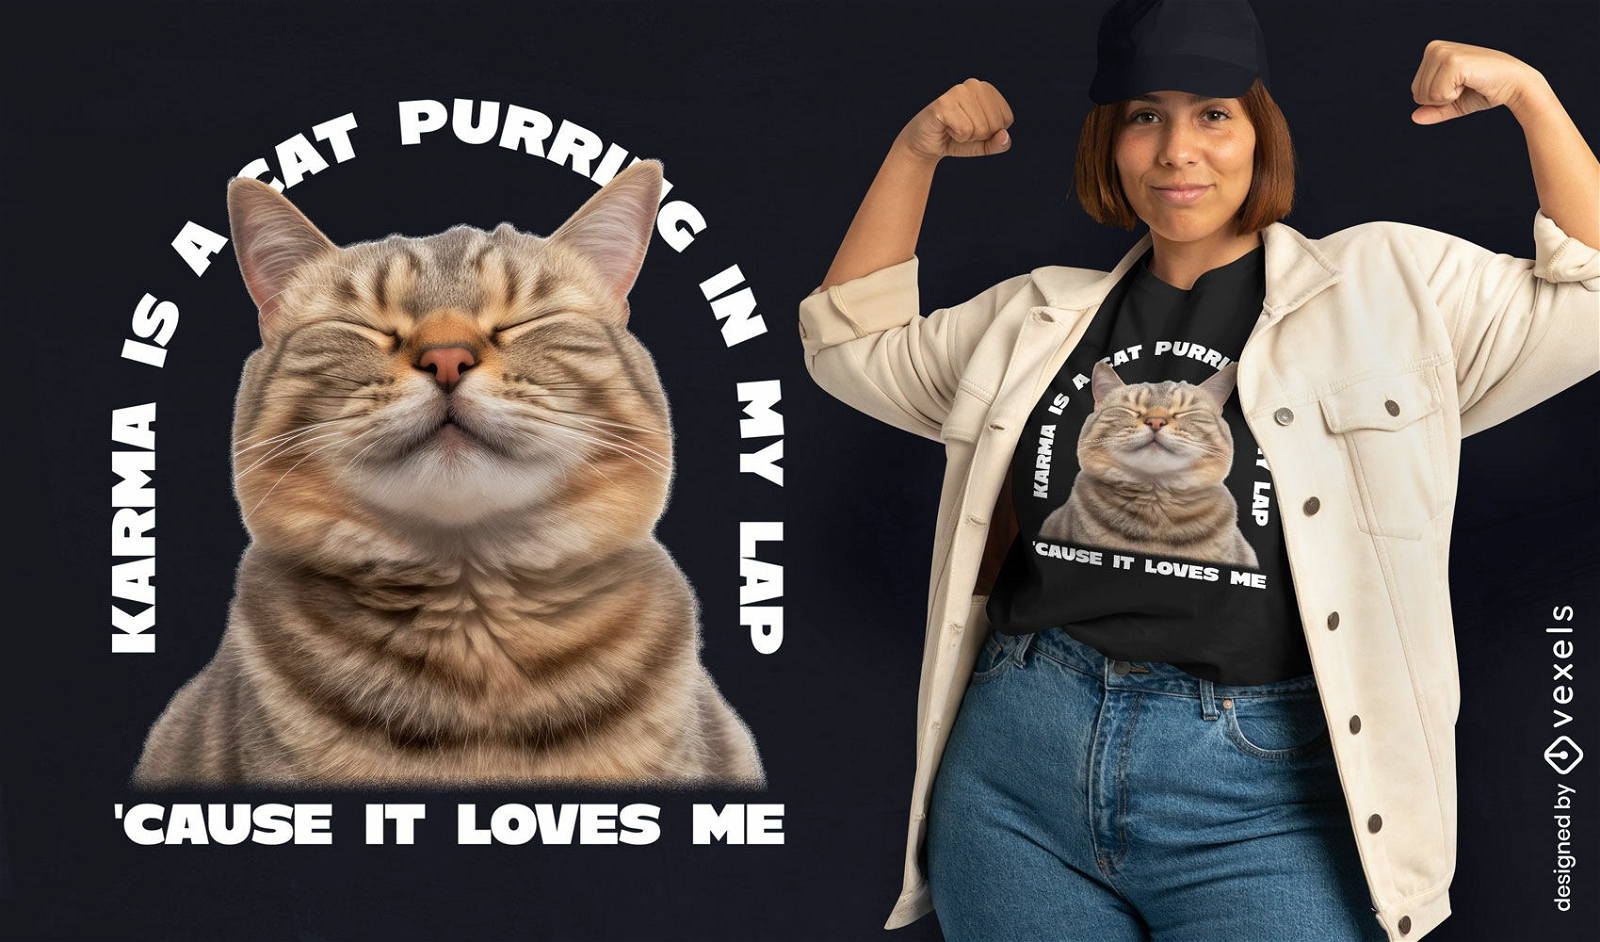 Cat purring quote t-shirt design